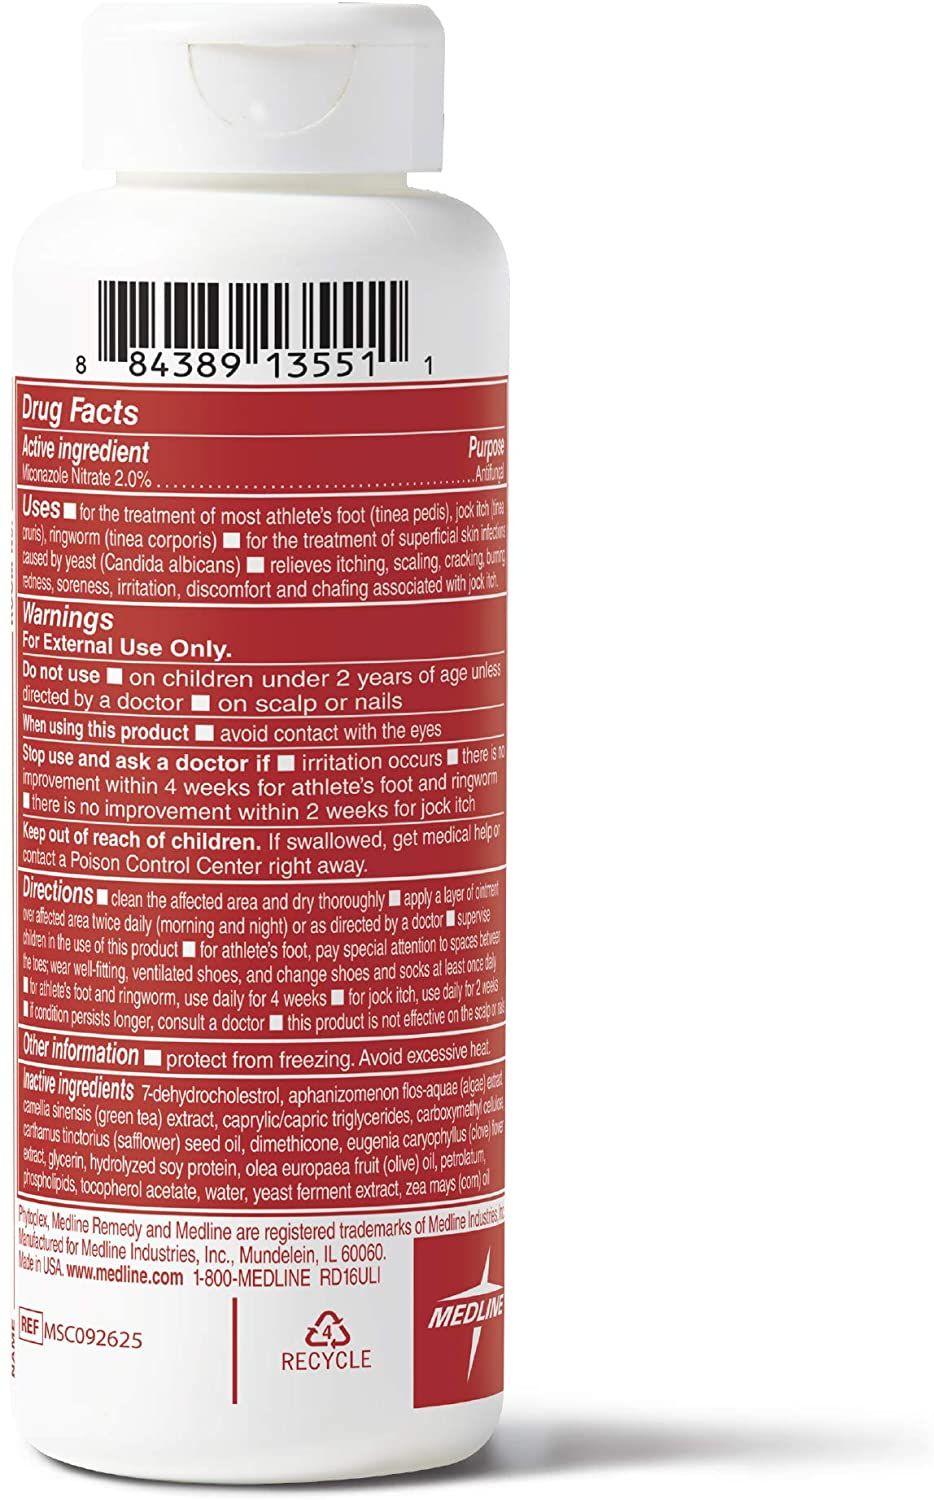 Medline Remedy Phytoplex Antifungal Powder - 3 oz